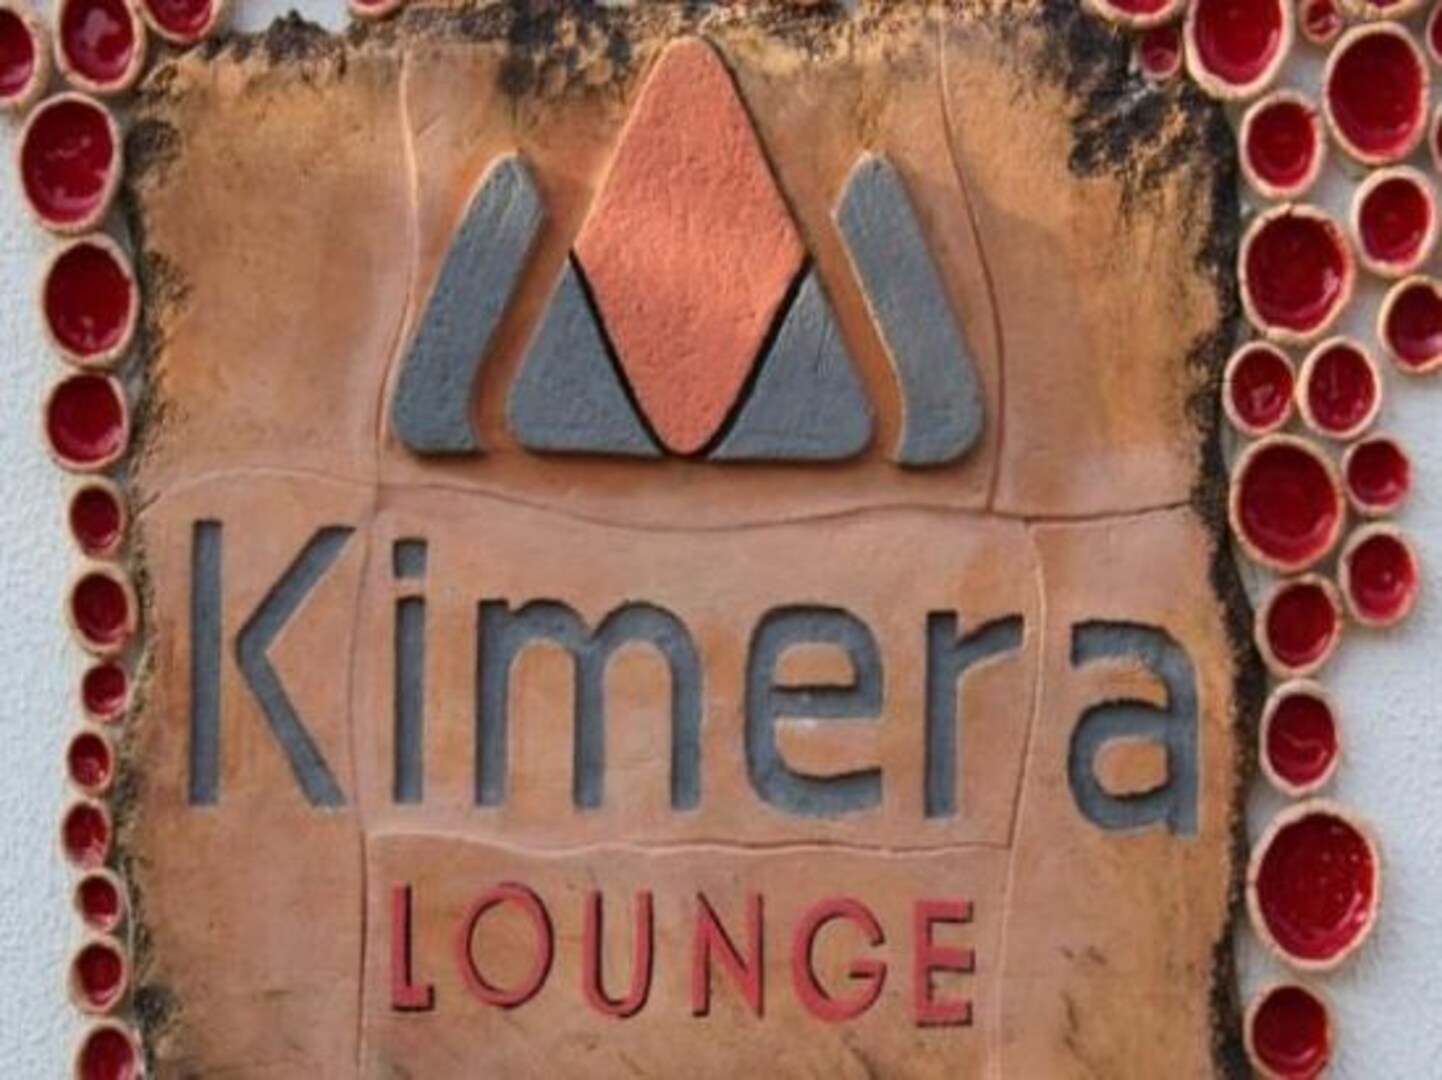 Kimera Lounge